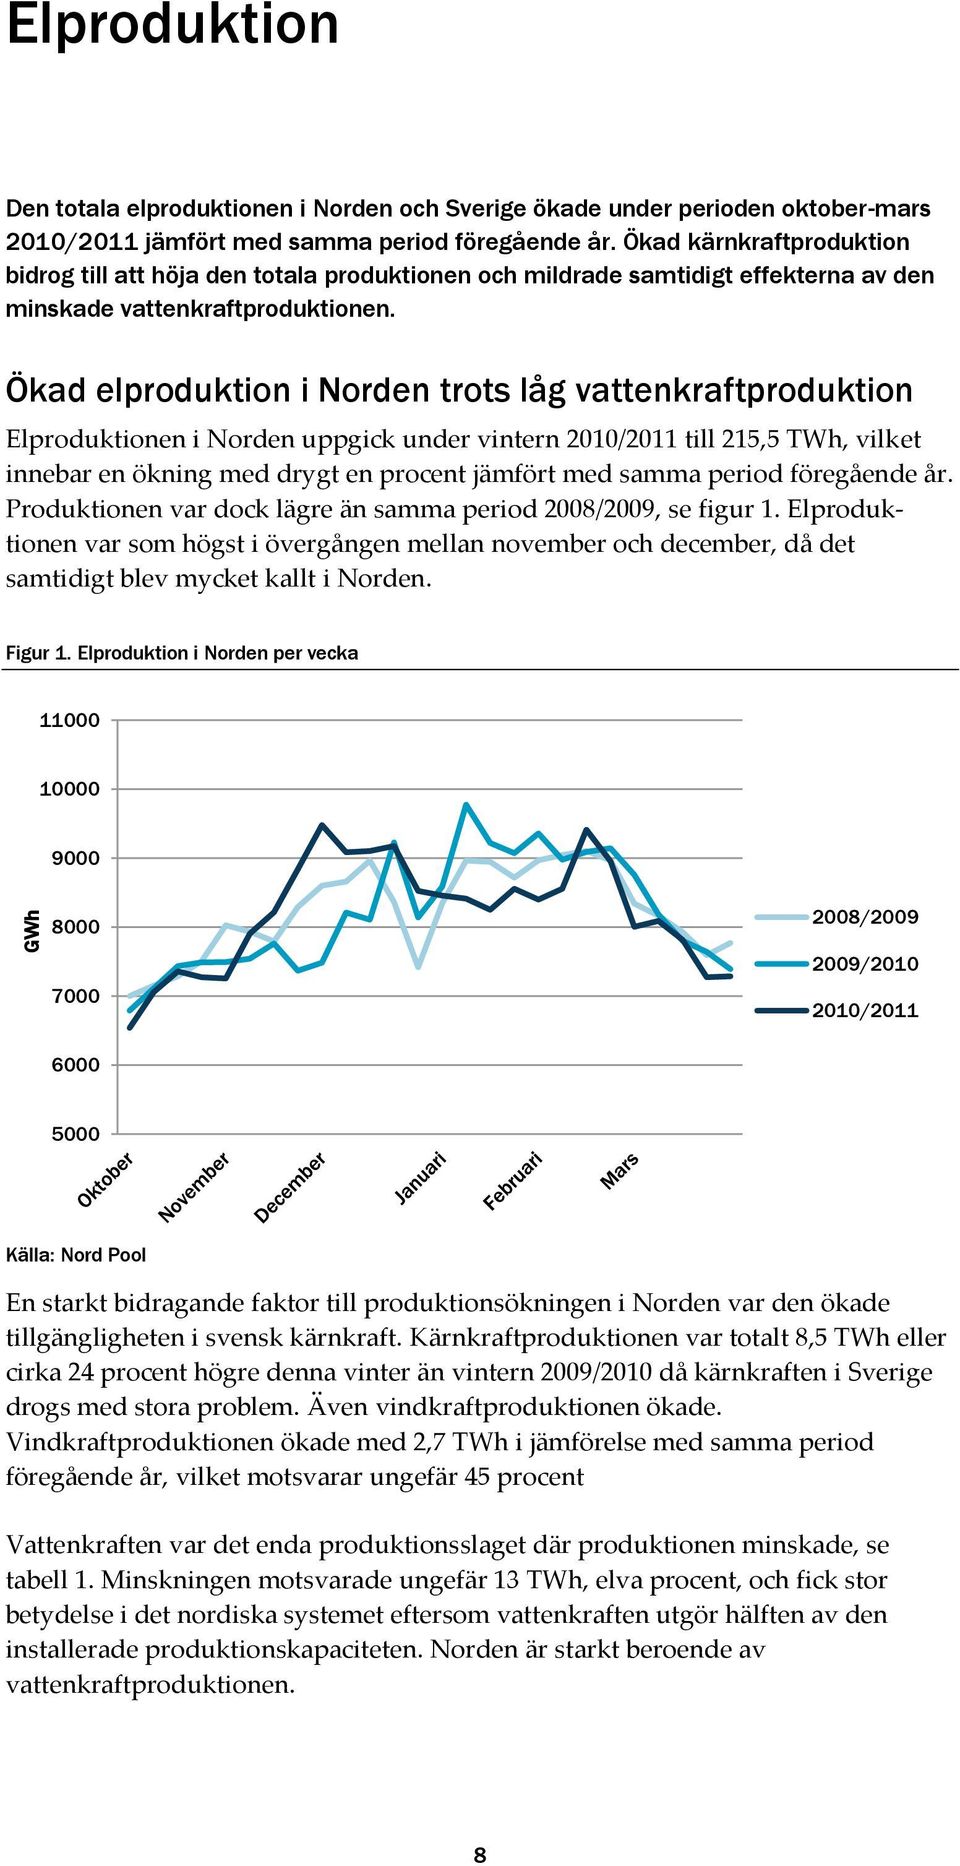 Ökad elproduktion i Norden trots låg vattenkraftproduktion Elproduktionen i Norden uppgick under vintern 2010/2011 till 215,5 TWh, vilket innebar en ökning med drygt en procent jämfört med samma